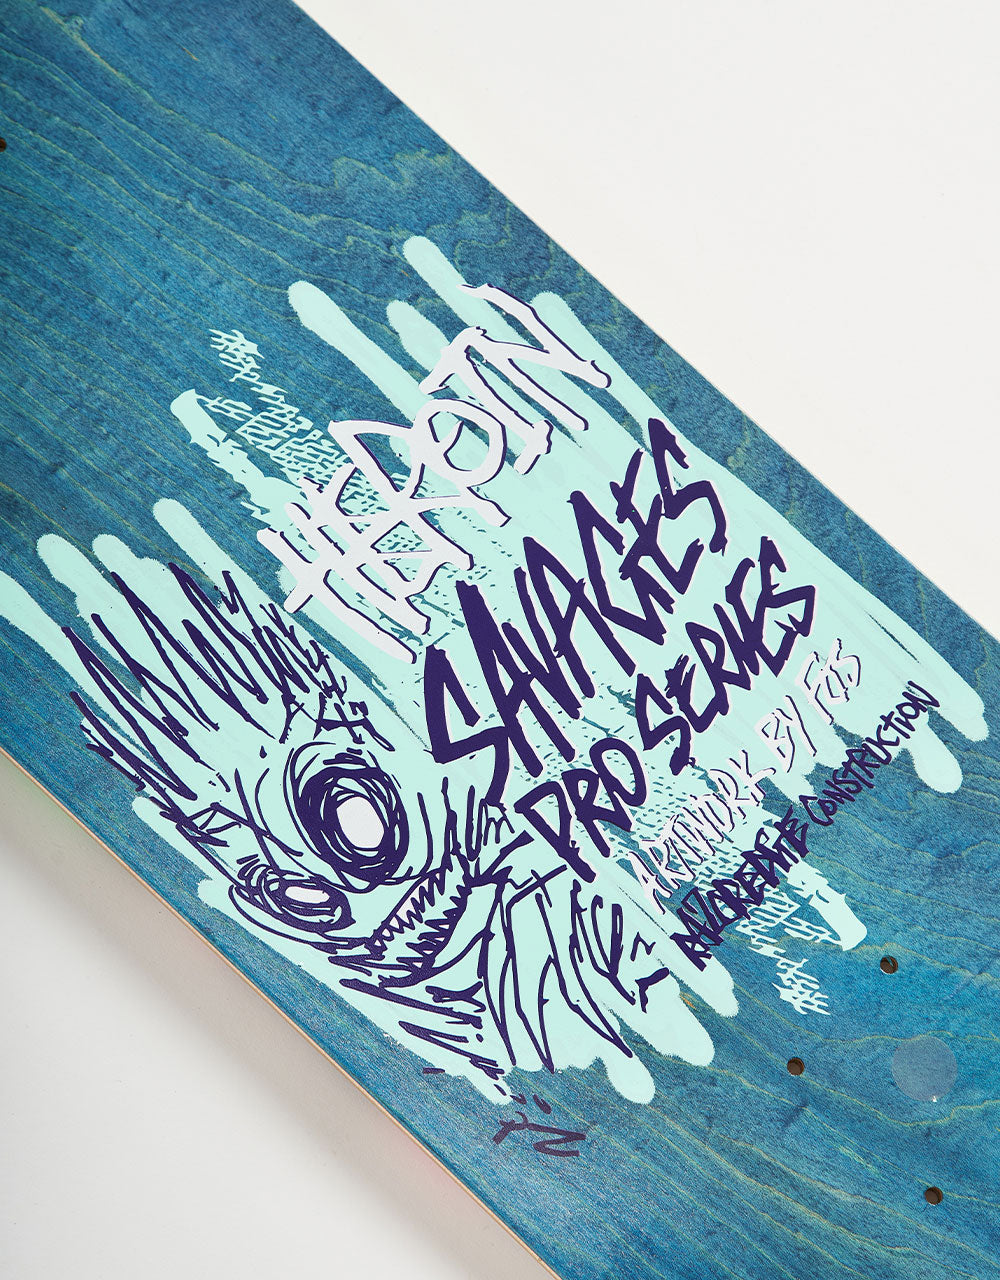 Heroin Swampy Savages Skateboard Deck - 9”